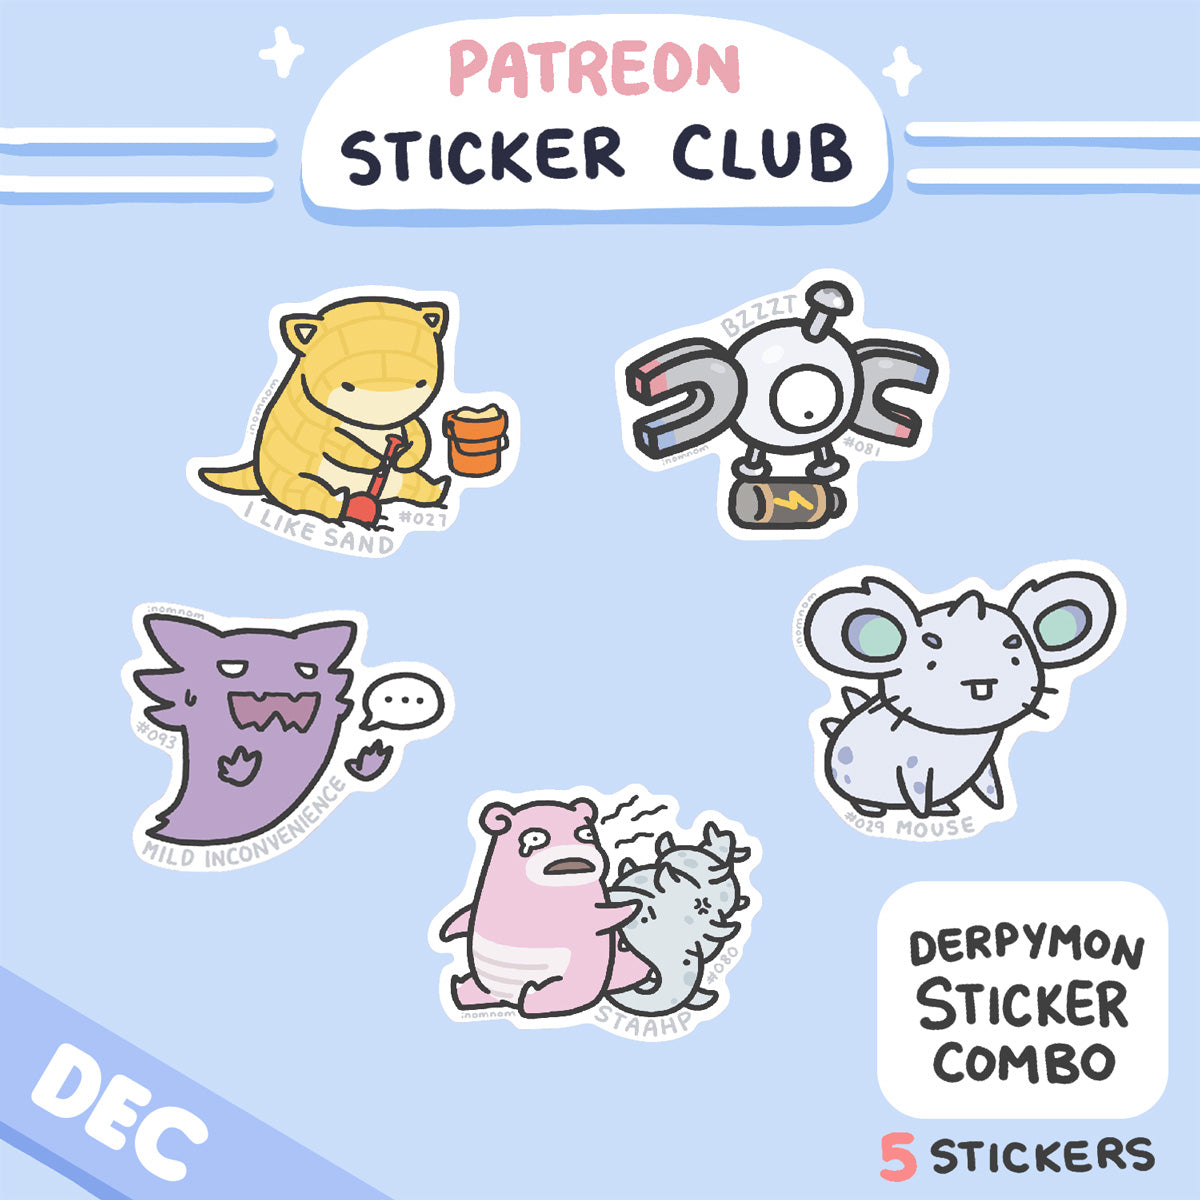 December Derpymon Sticker Rewards